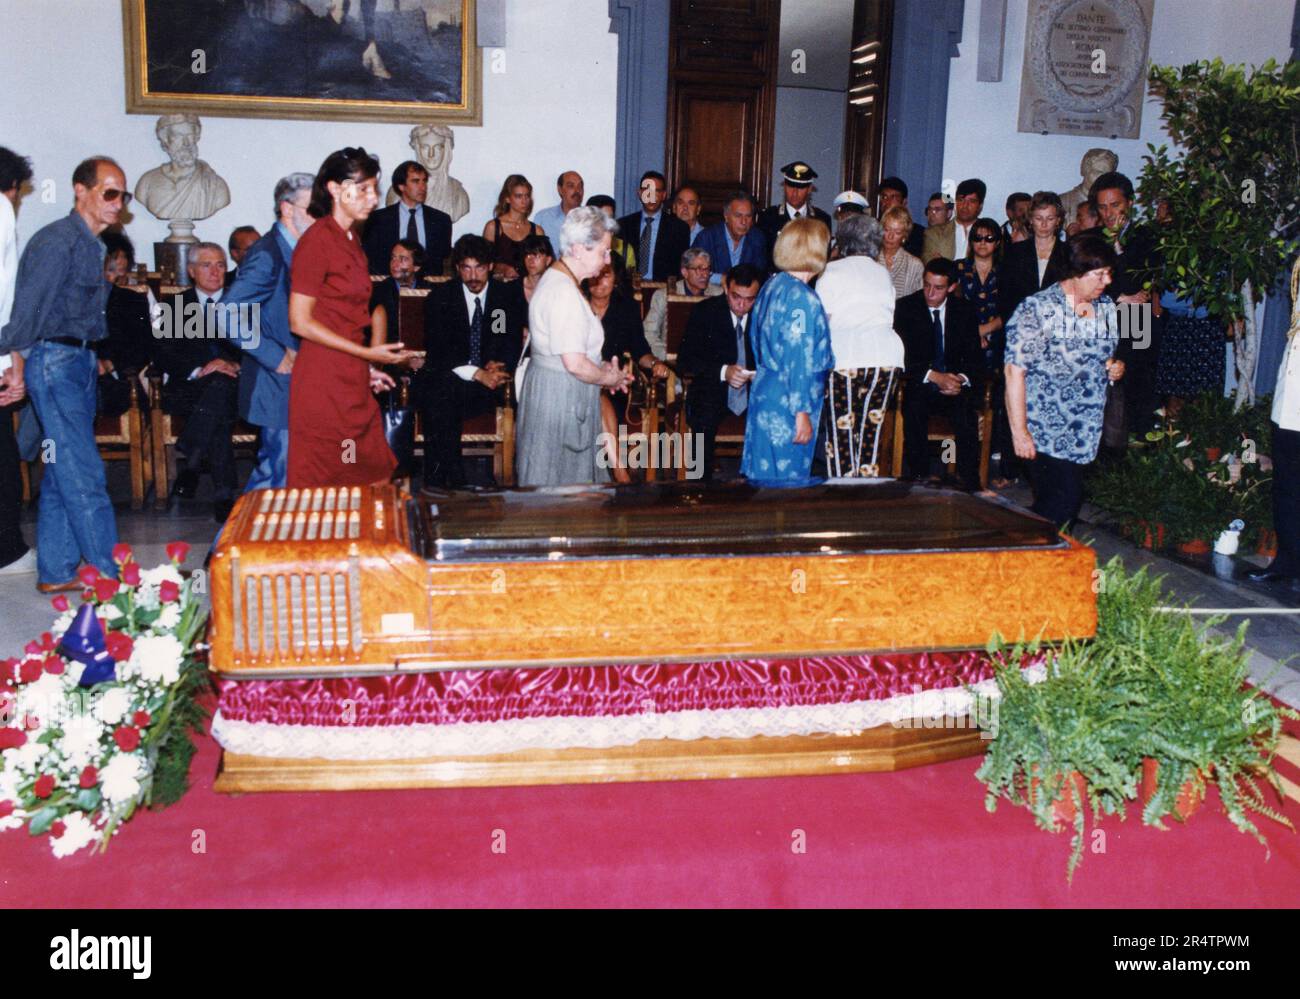 Personnes rendant hommage à l'acteur italien Vittorio Gassman dans la salle funéraire du Capitole, Rome, Italie 2000 Banque D'Images